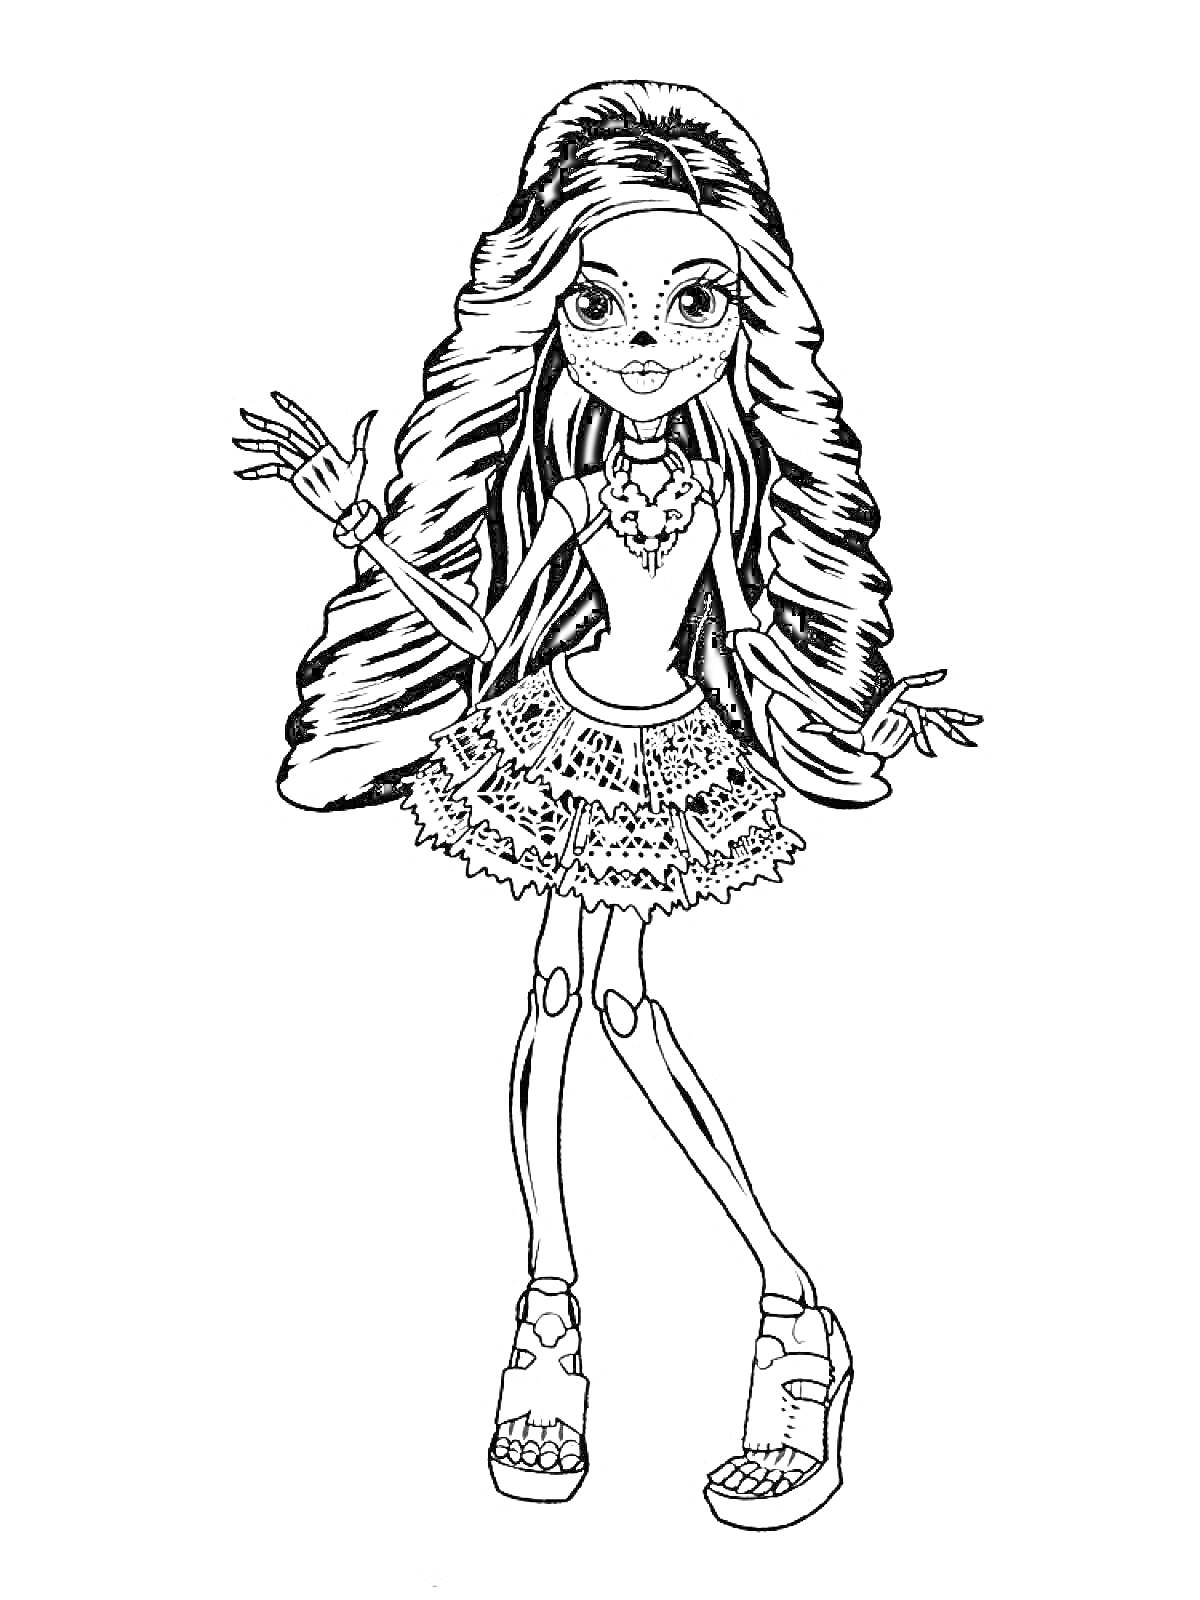 Раскраска Девушка с длинными волосами, в очках, ожерелье, юбка с узором, босоножки